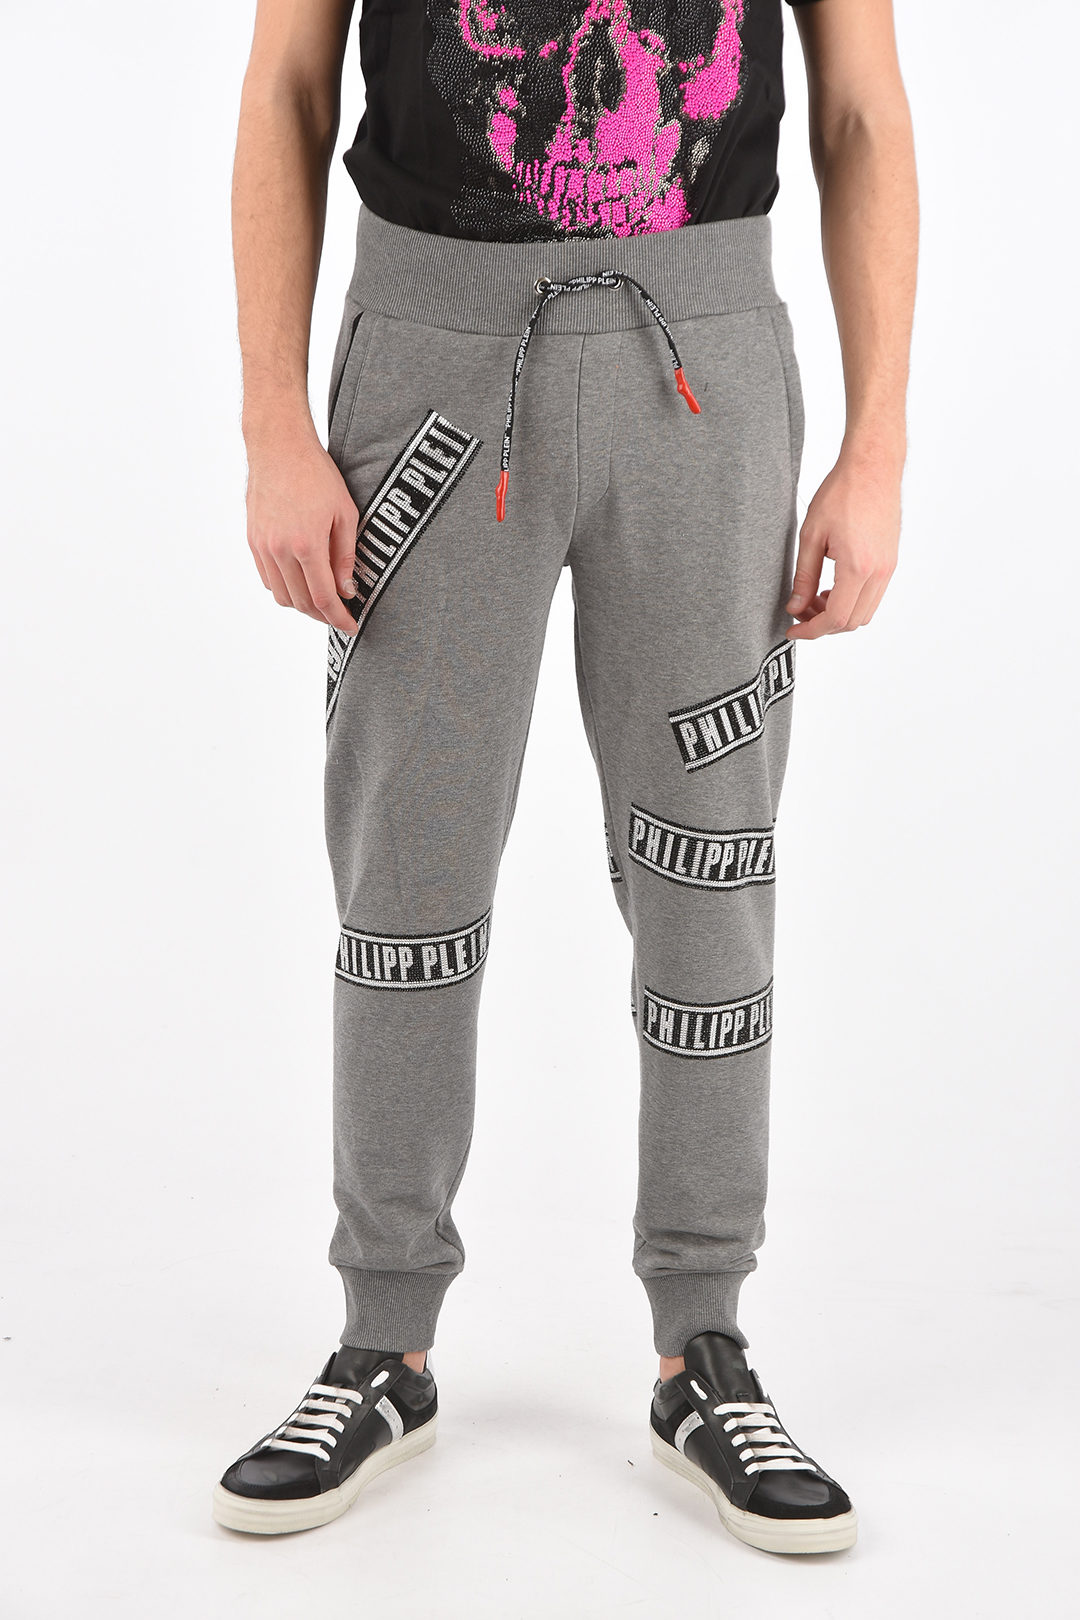 Philipp Plein Rhinestone Embellished Sweatpants men - Glamood Outlet